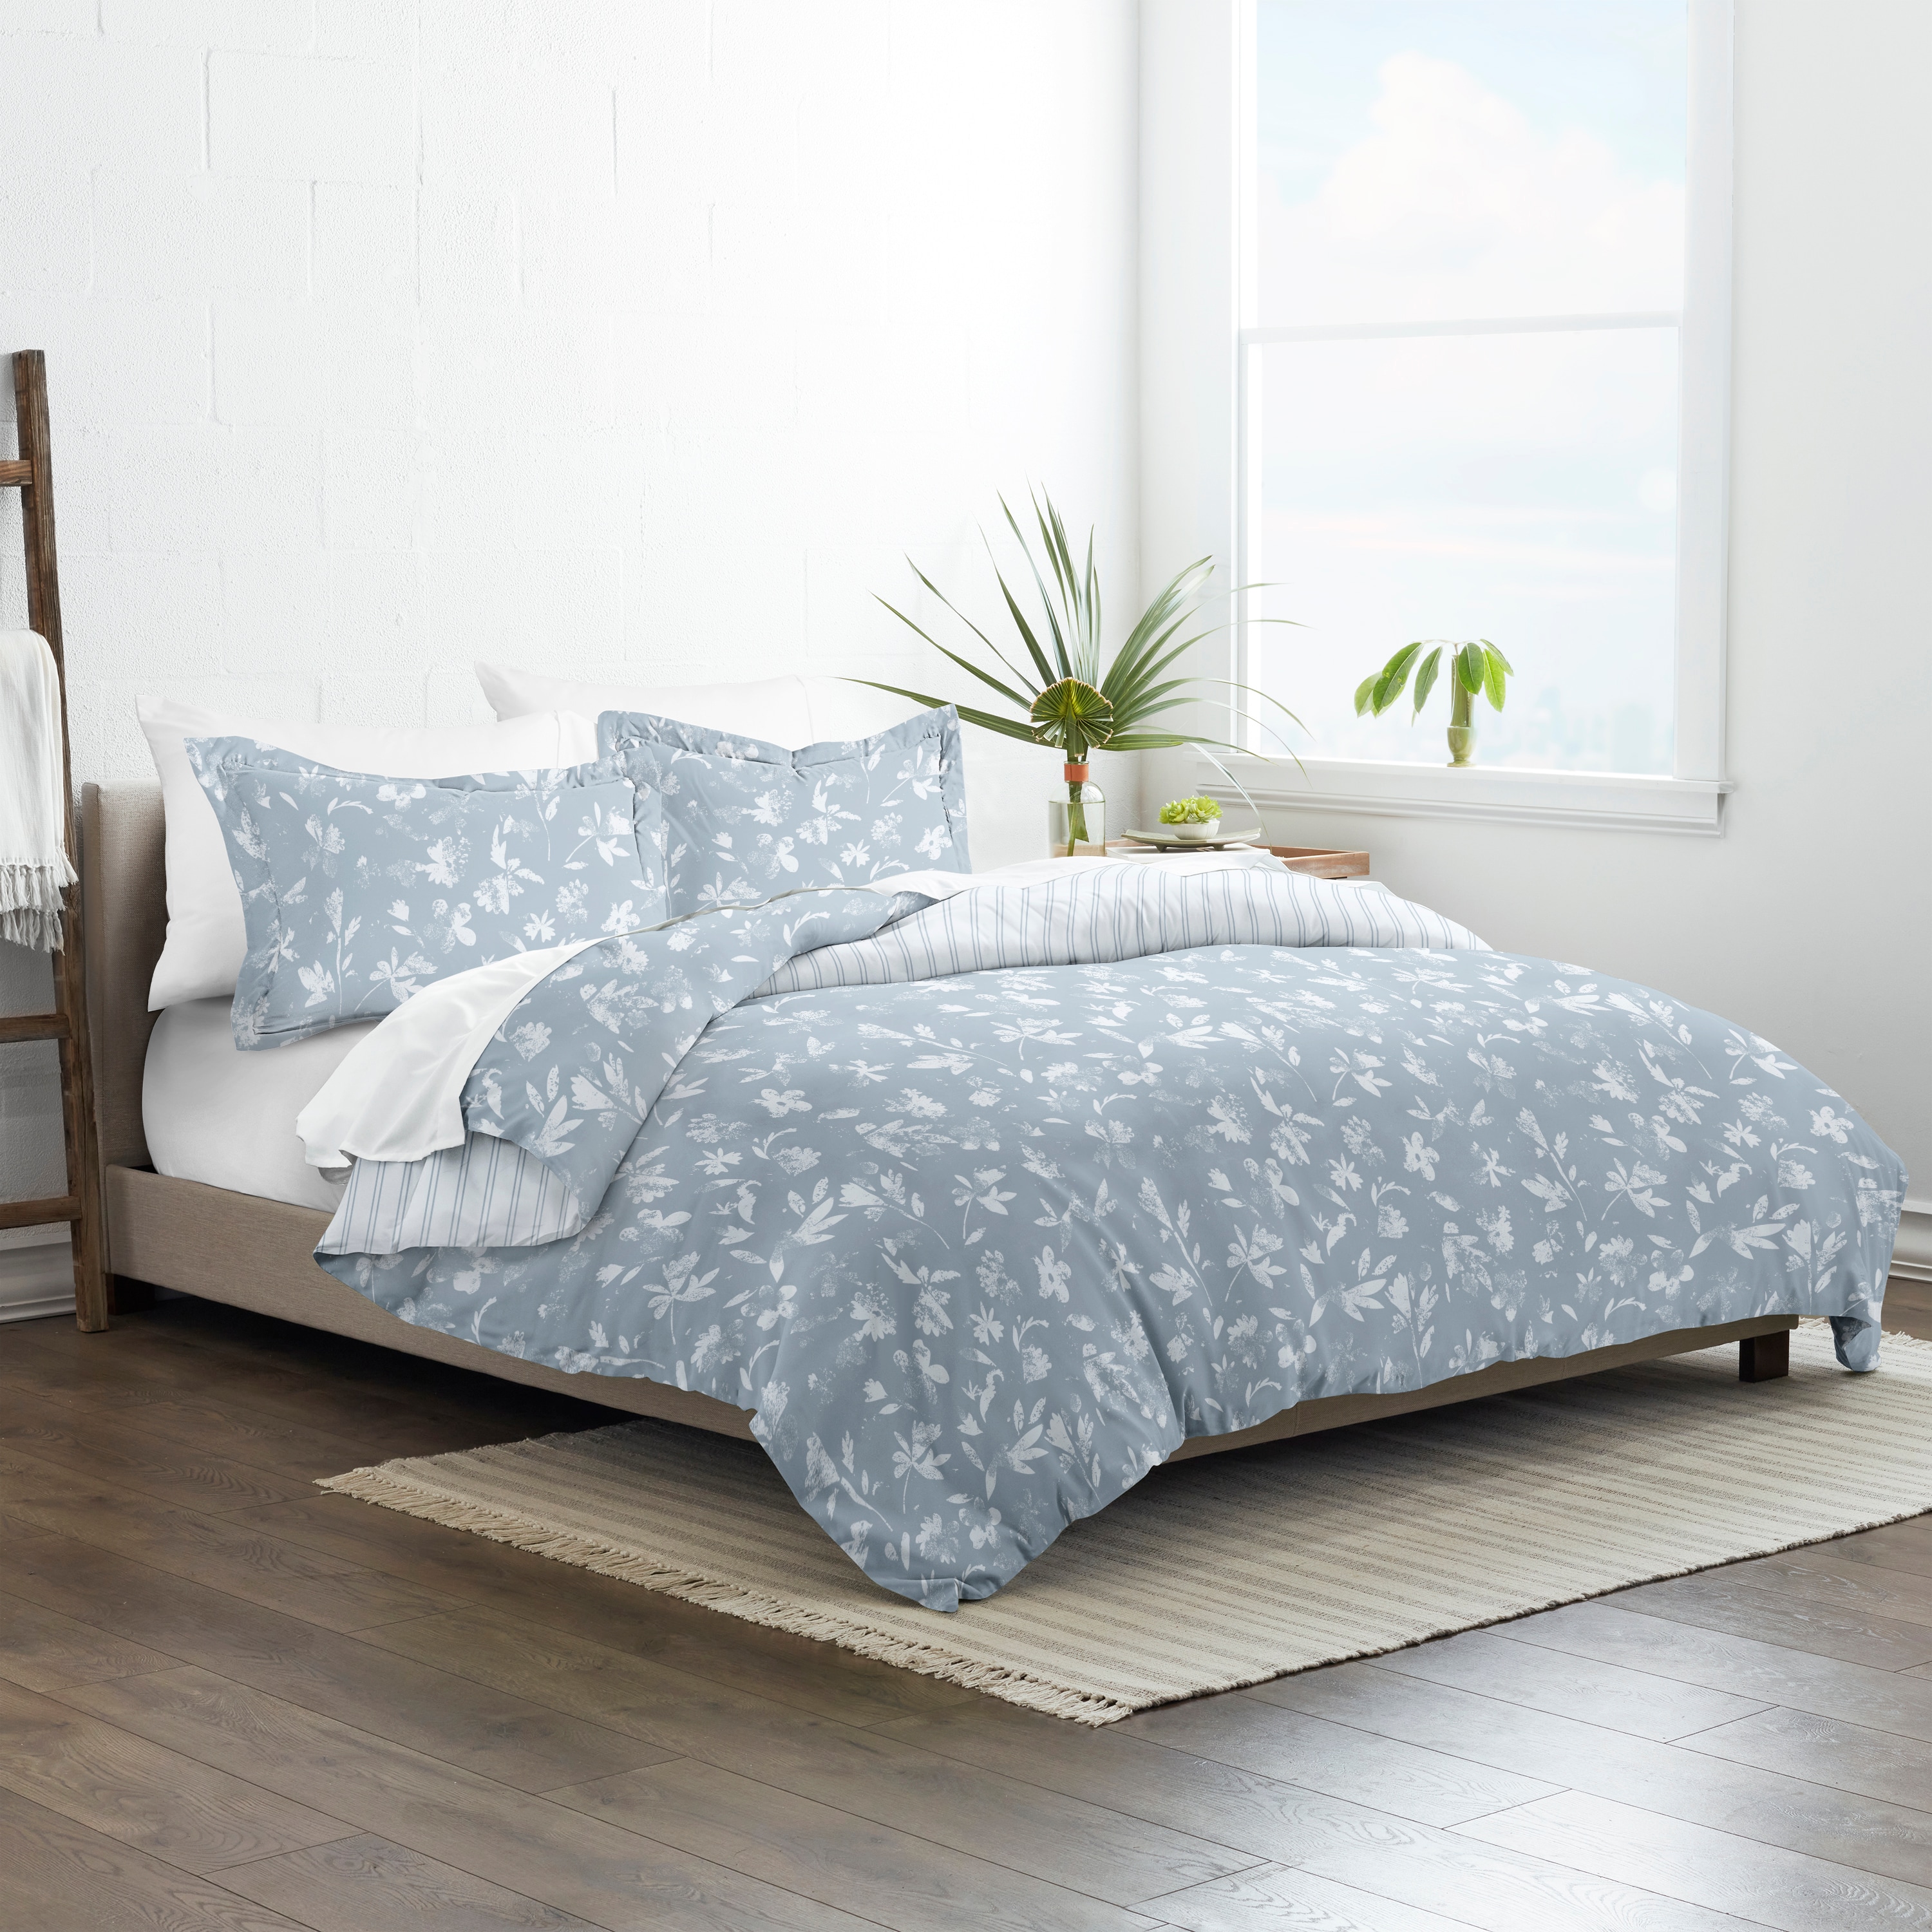 Supreme Bed Sheets  Duvet bedding sets, Dorm room bedding, Bed